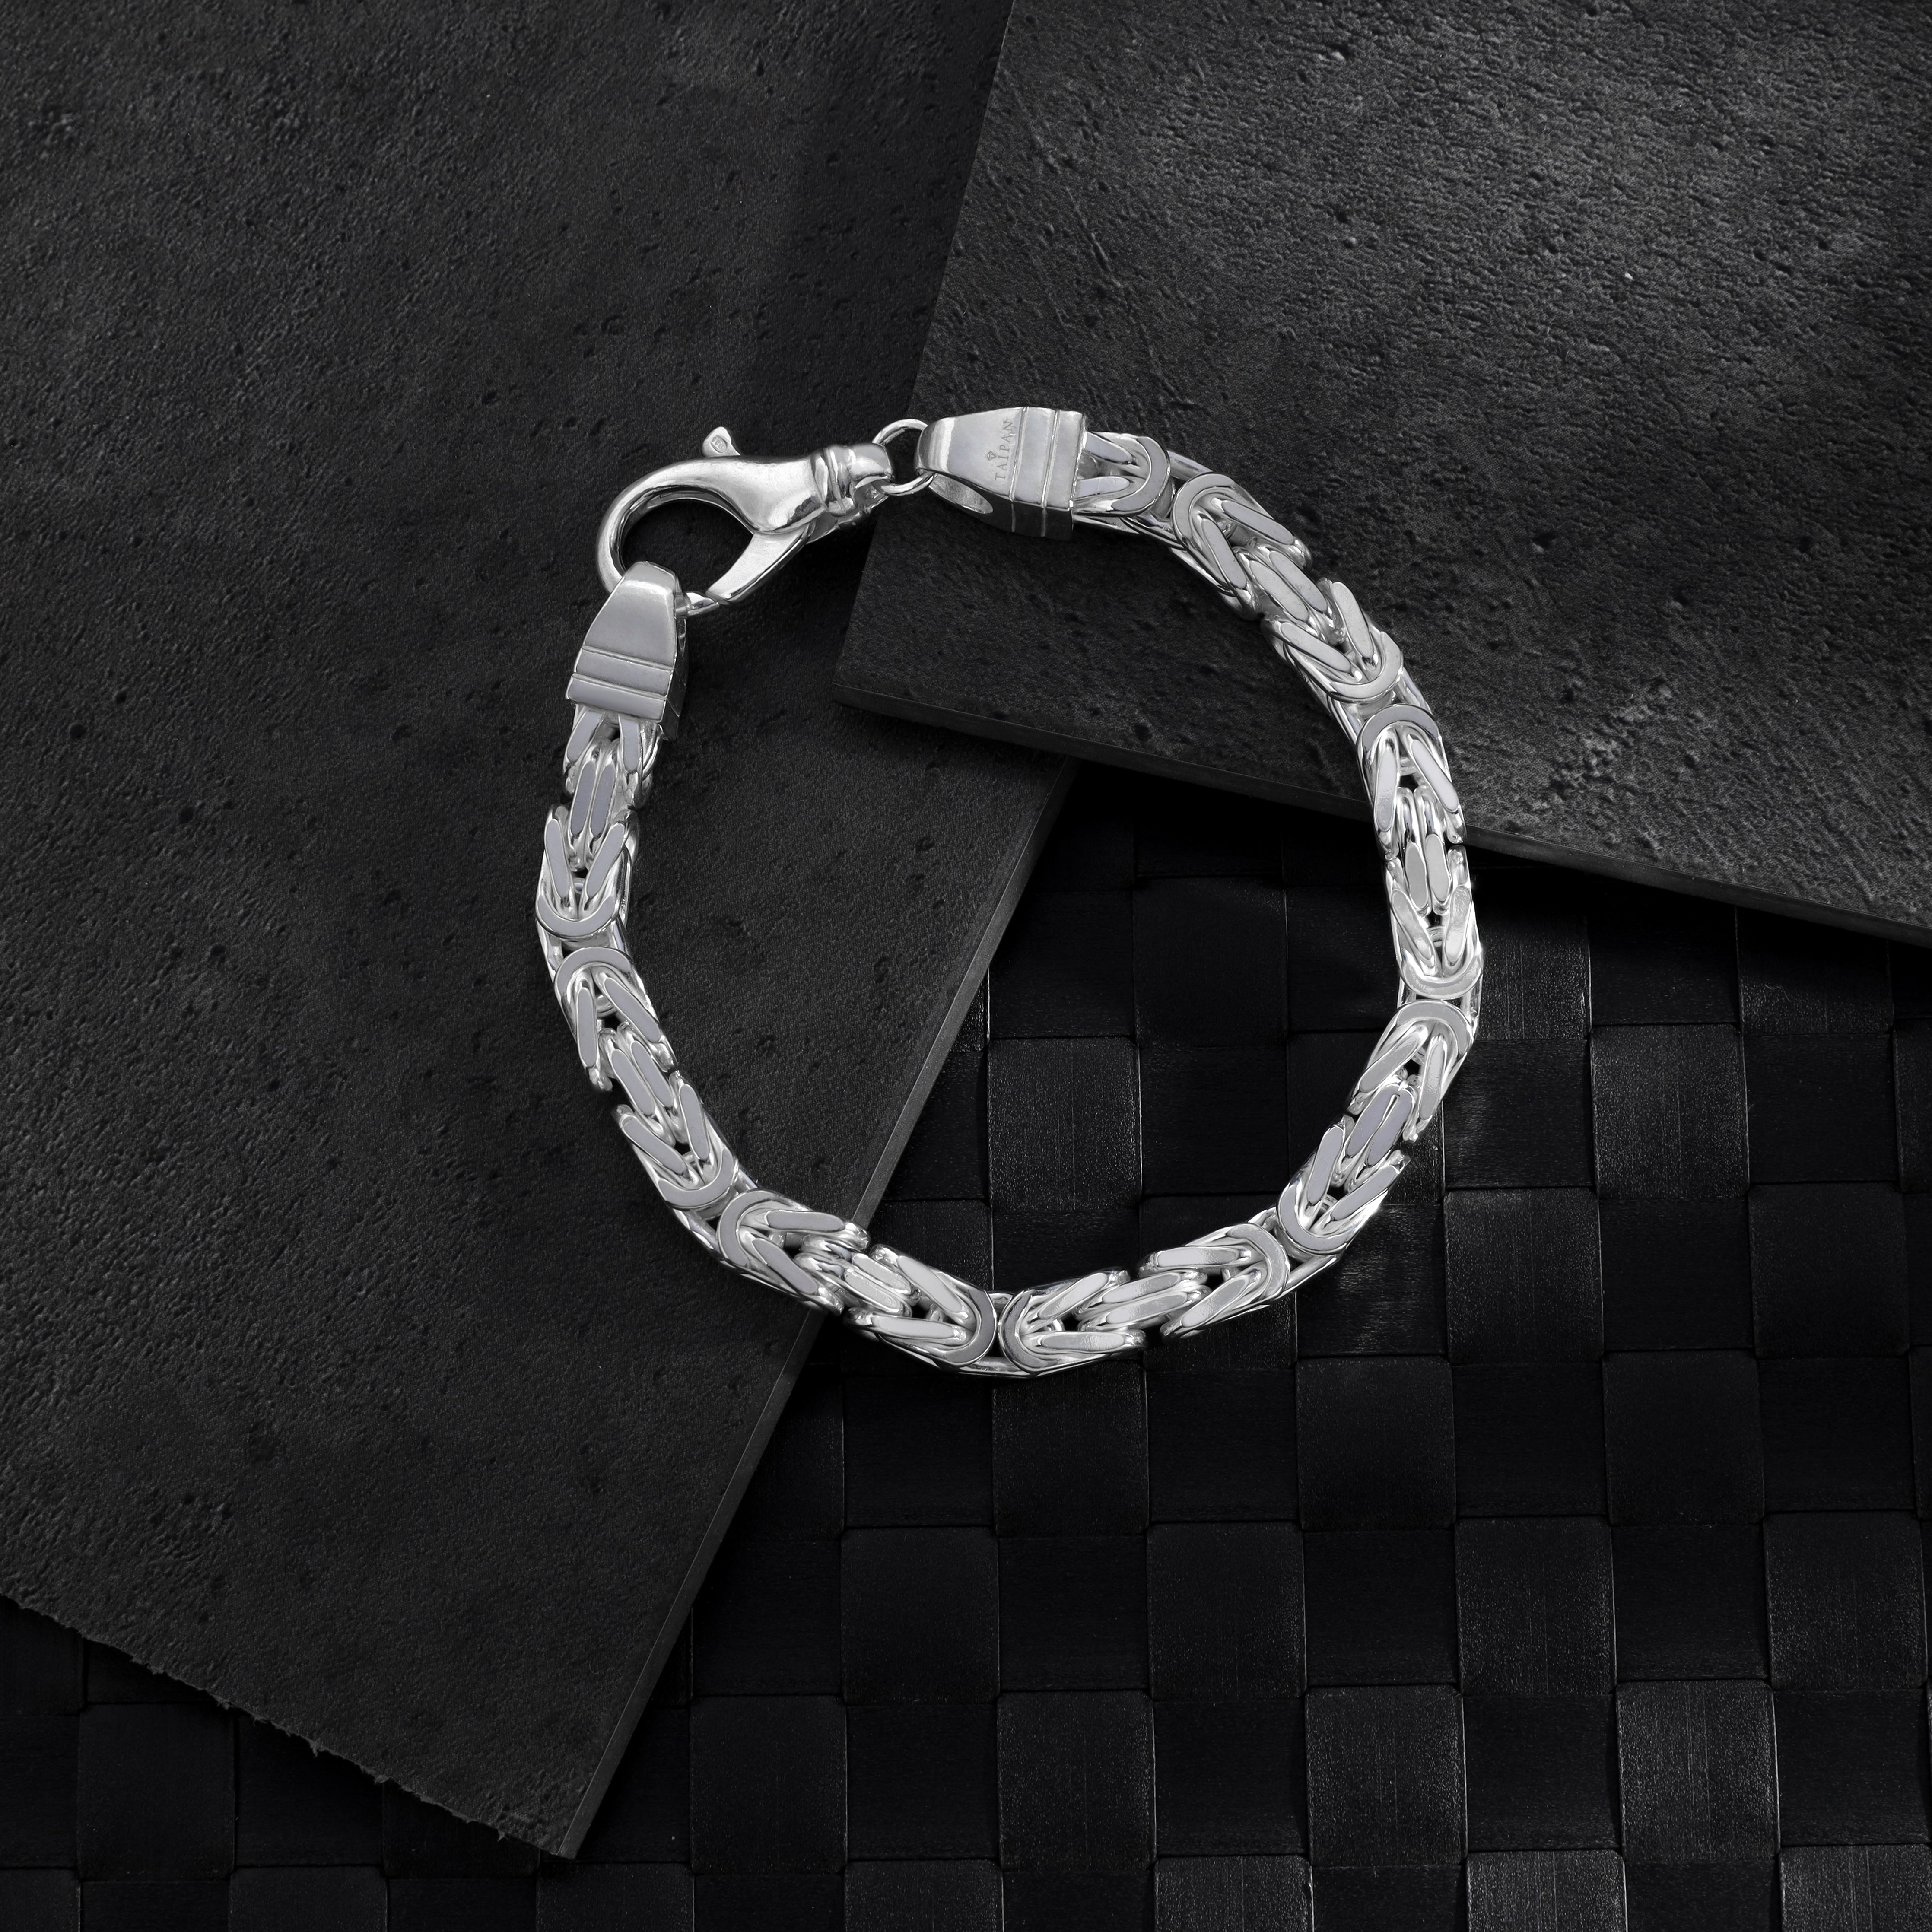 Königskette vierkant Armband Königsarmband 6,5mm breit 22cm lang aus 925 Sterling Silber (B461) - Taipan Schmuck